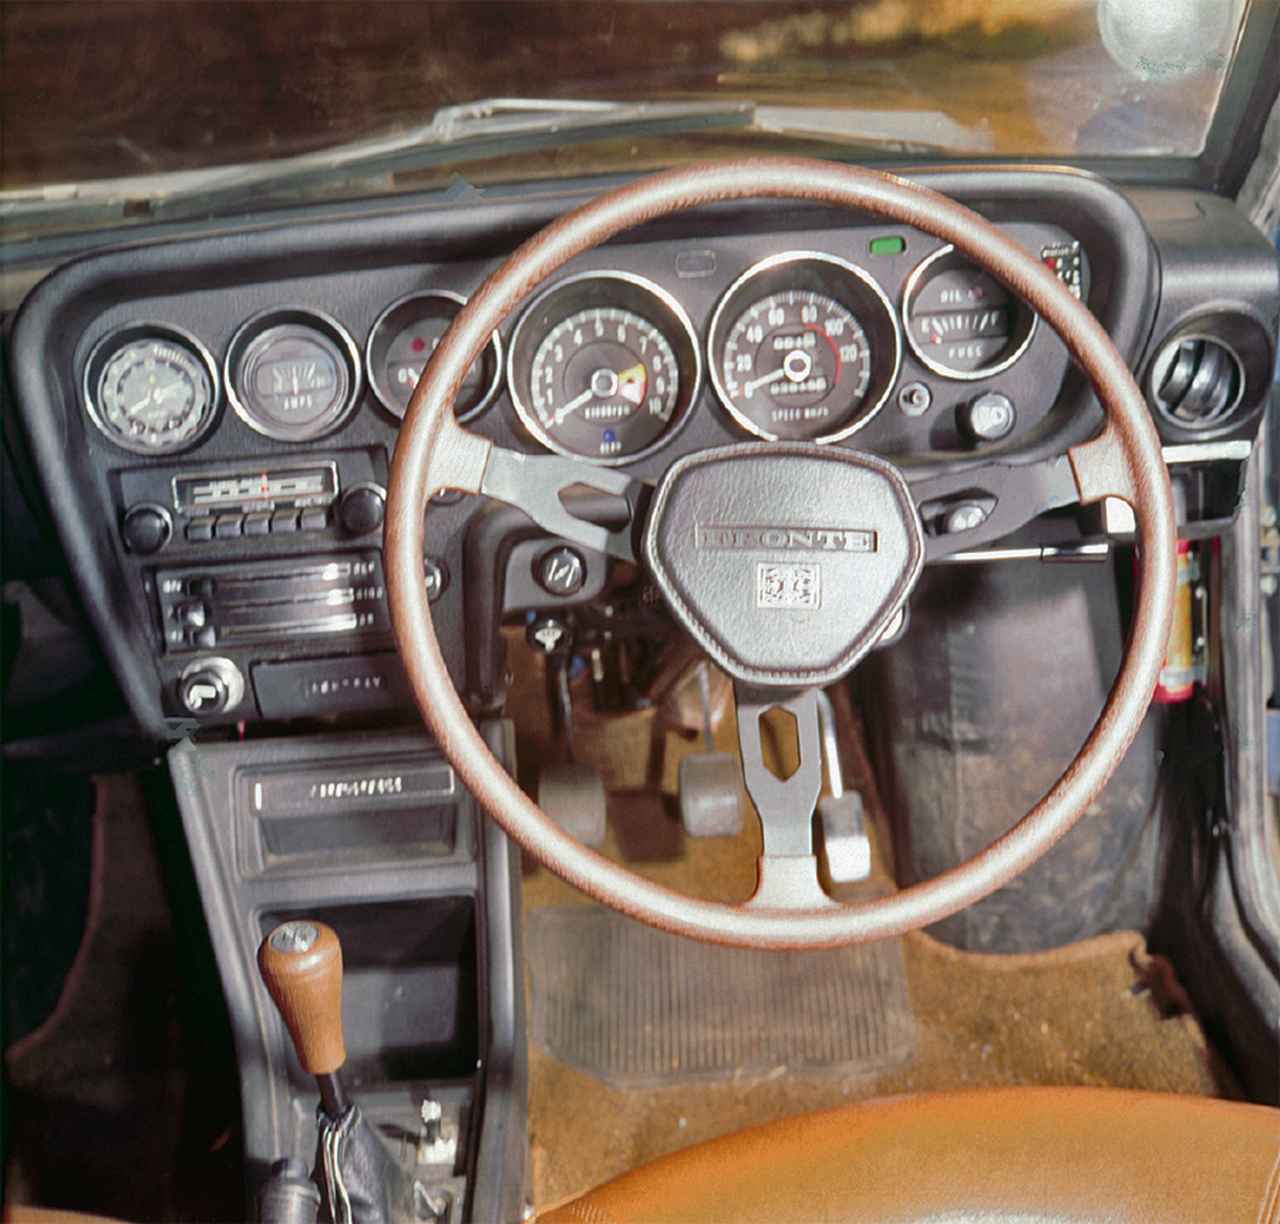 昭和の名車 37 スズキ フロンテクーペ 昭和46年 1971年 Webモーターマガジン 自動車情報サイト 新車 中古車 Carview